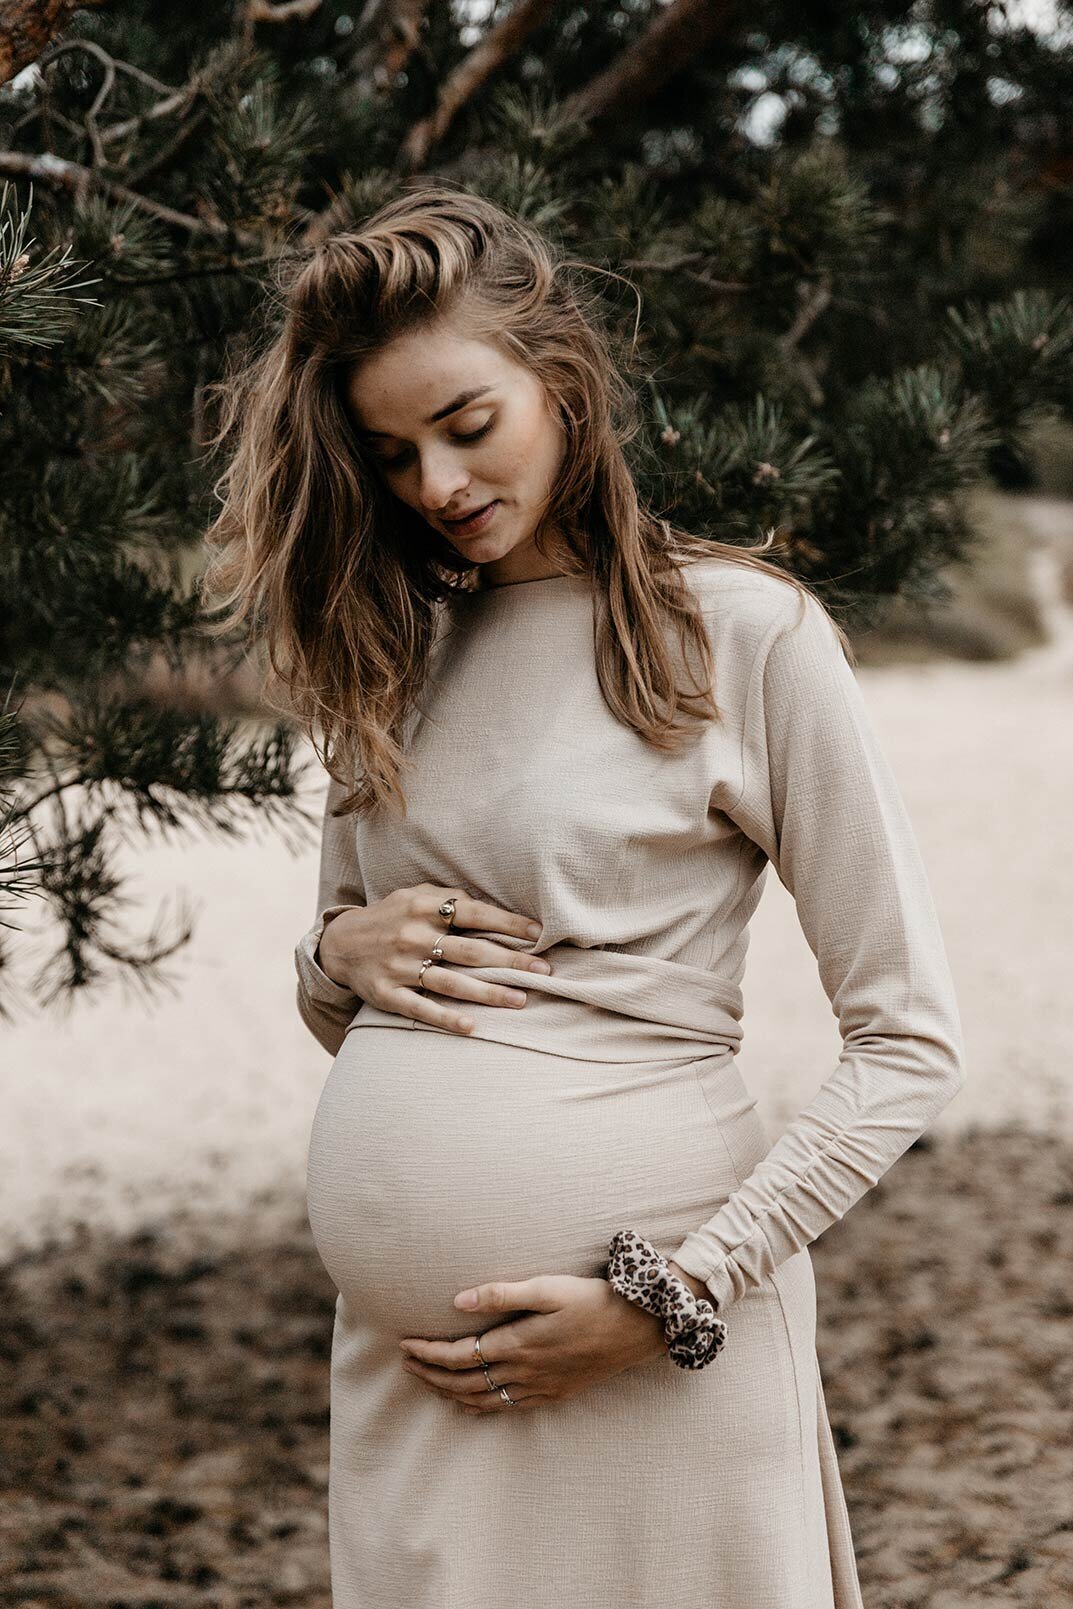 Een unieke fotoshoot van de zwangere vrouw en haar groeiende buik